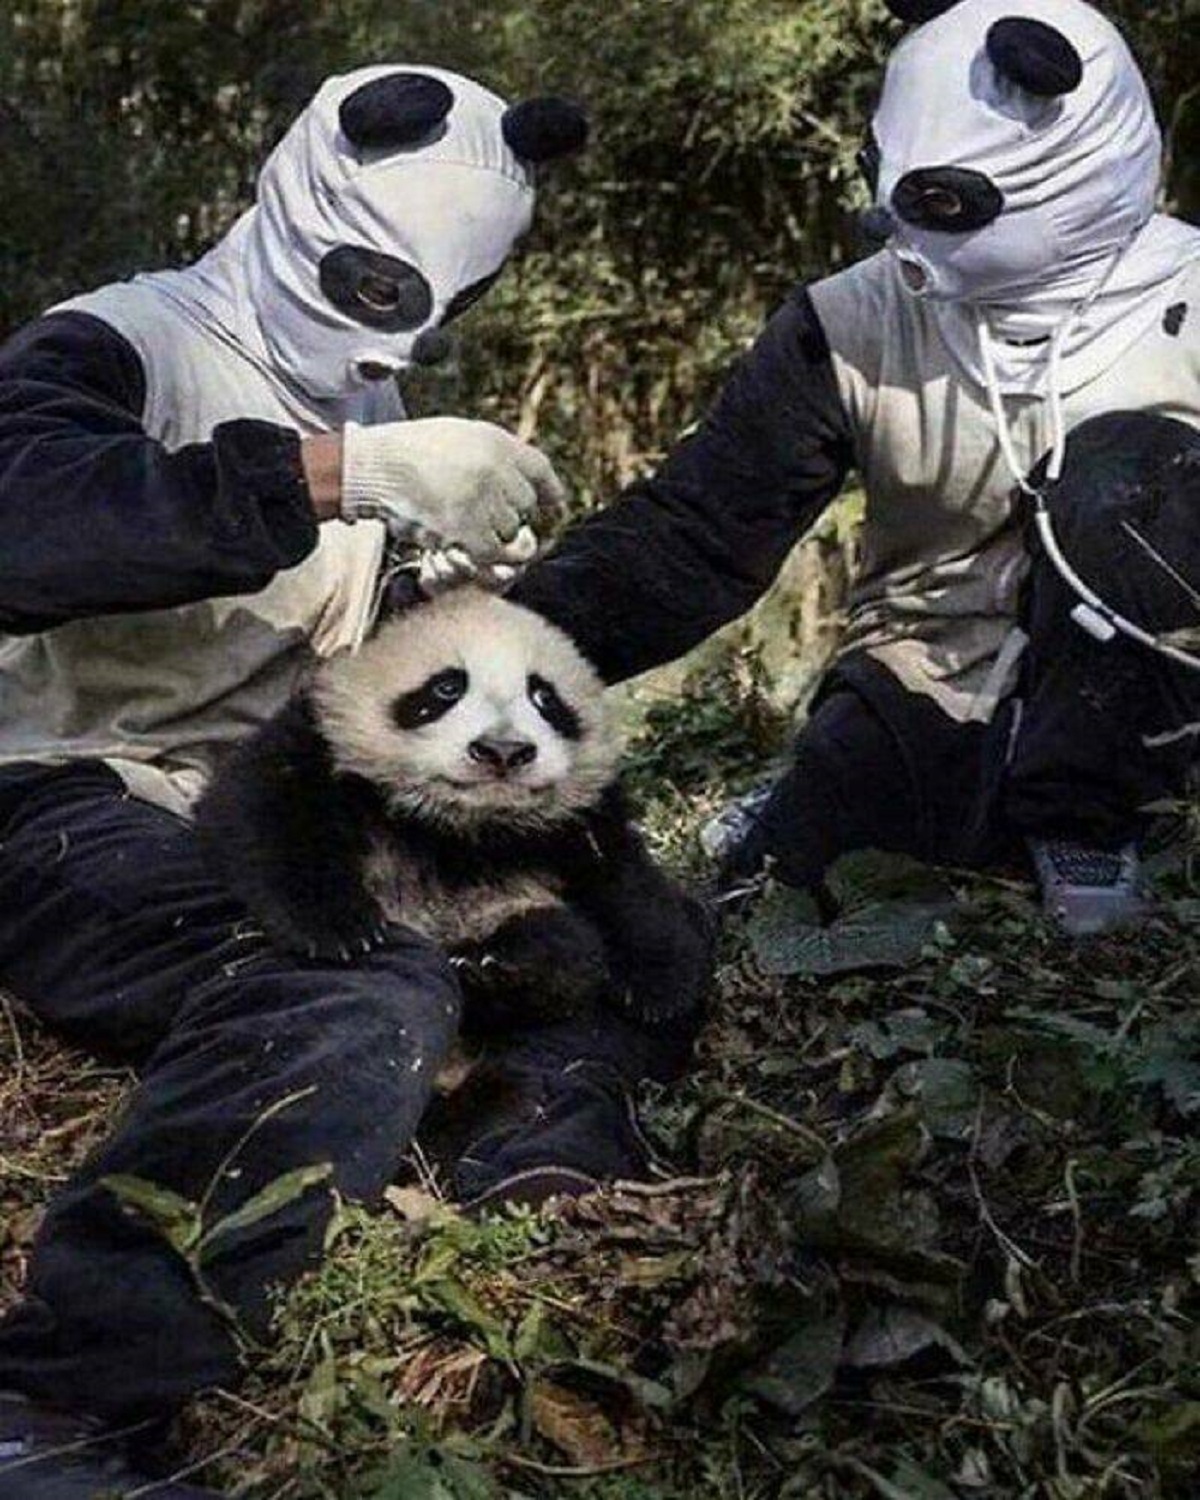 "Panda Caretakers In China"